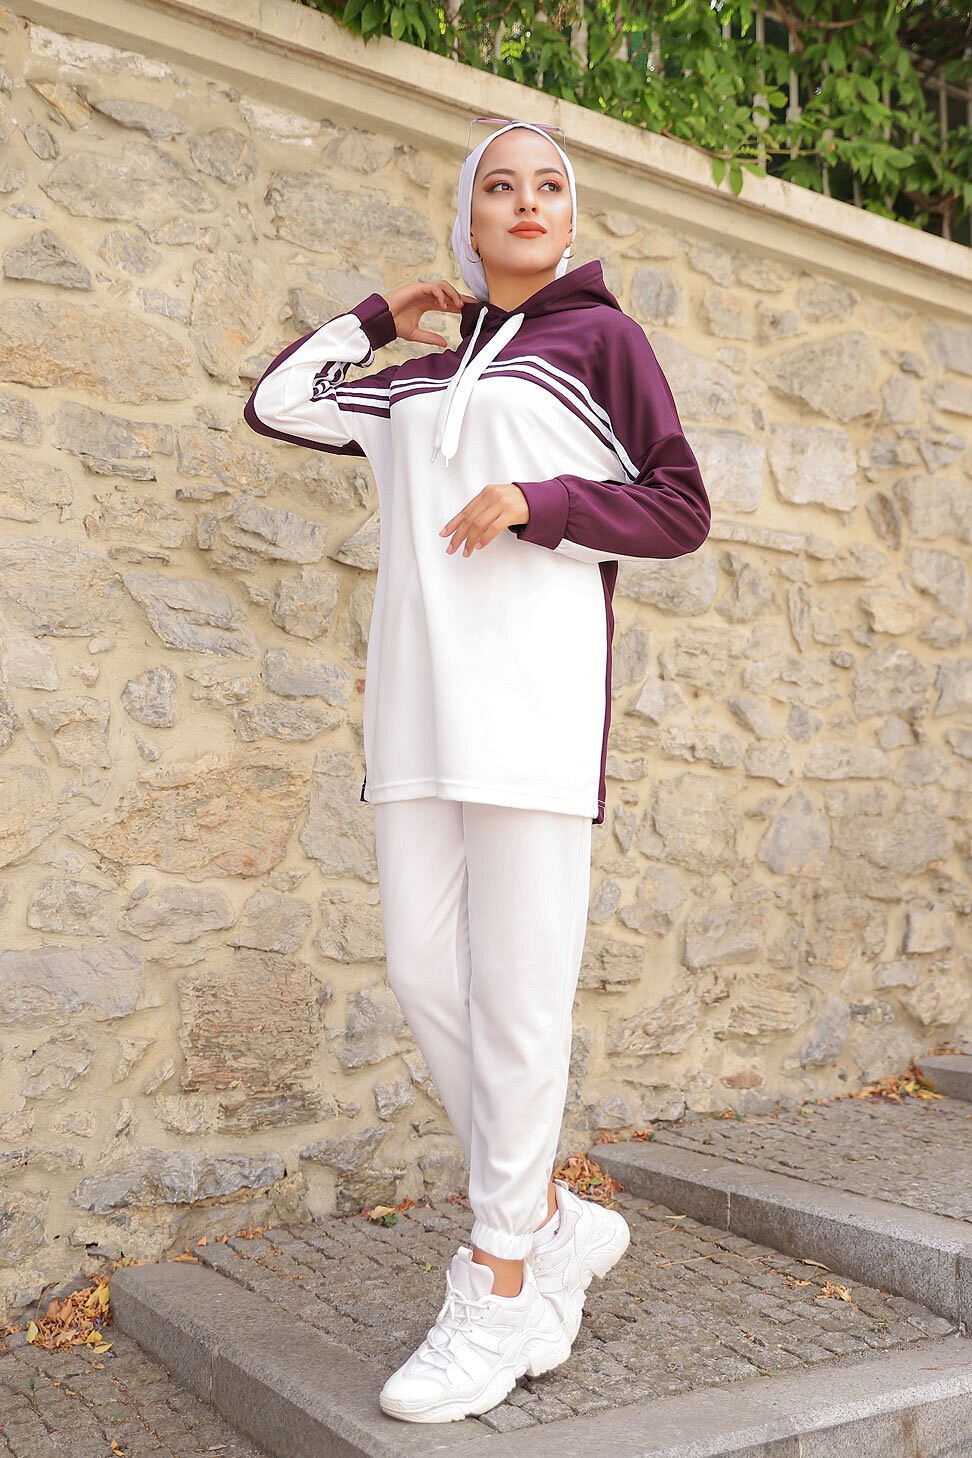 Survêtement femme (Ensemble deux pièces sweet à capuche et pantalon) -  Couleur Blanc et Brique - Prêt à porter et accessoires sur